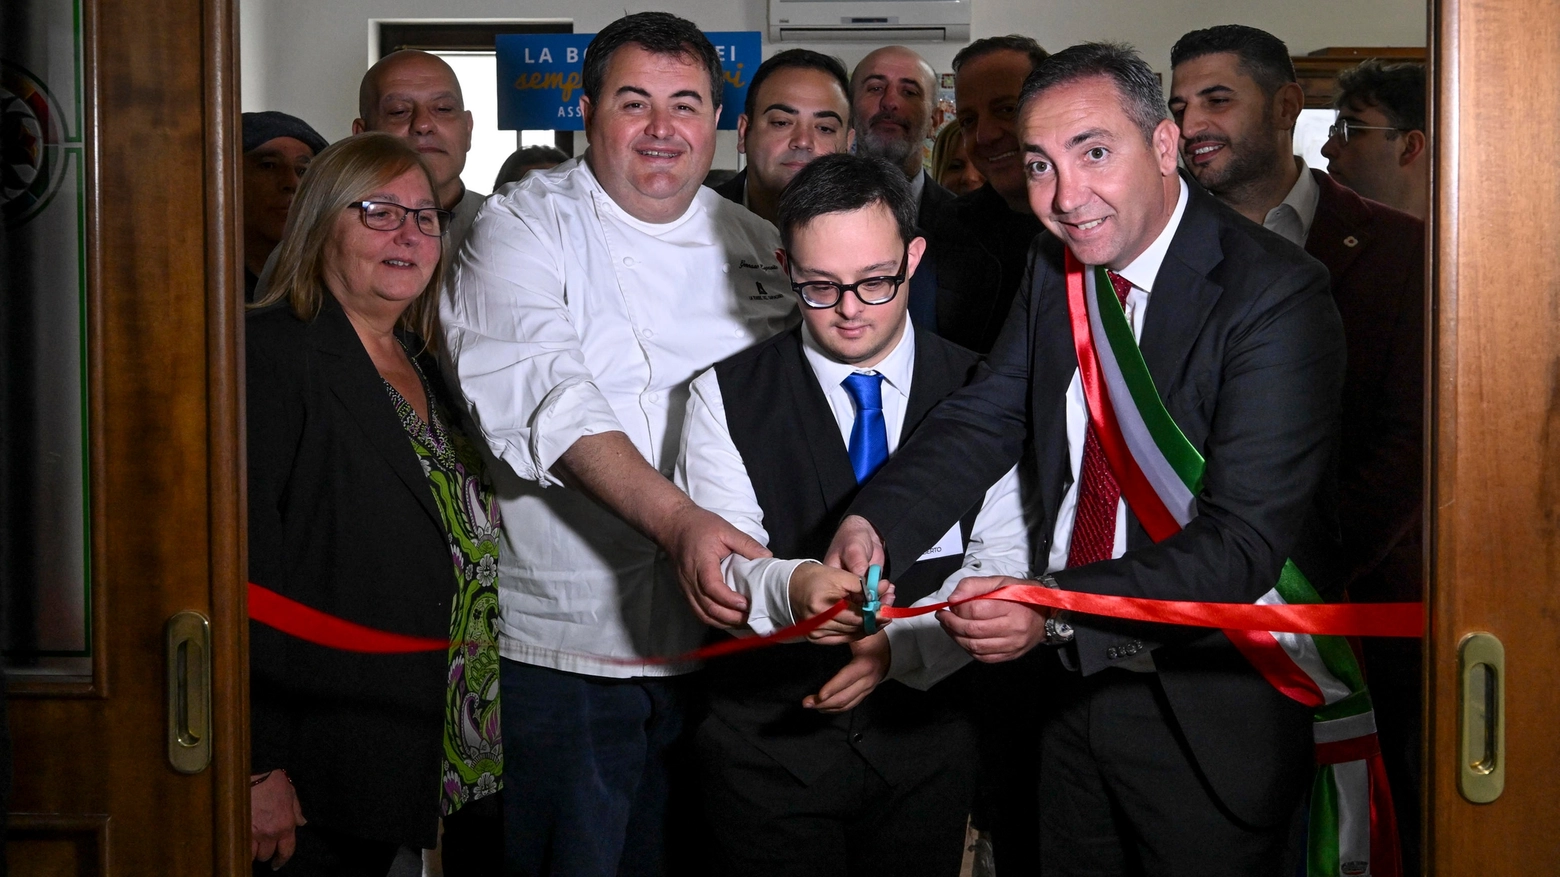 È stata inaugurata dallo chef Gennaro Esposito la cucina di Casa Mehari, all’interno del bene confiscato nel comune di Quarto: “Un luogo di inclusione e soprattutto dove ci si diverte”